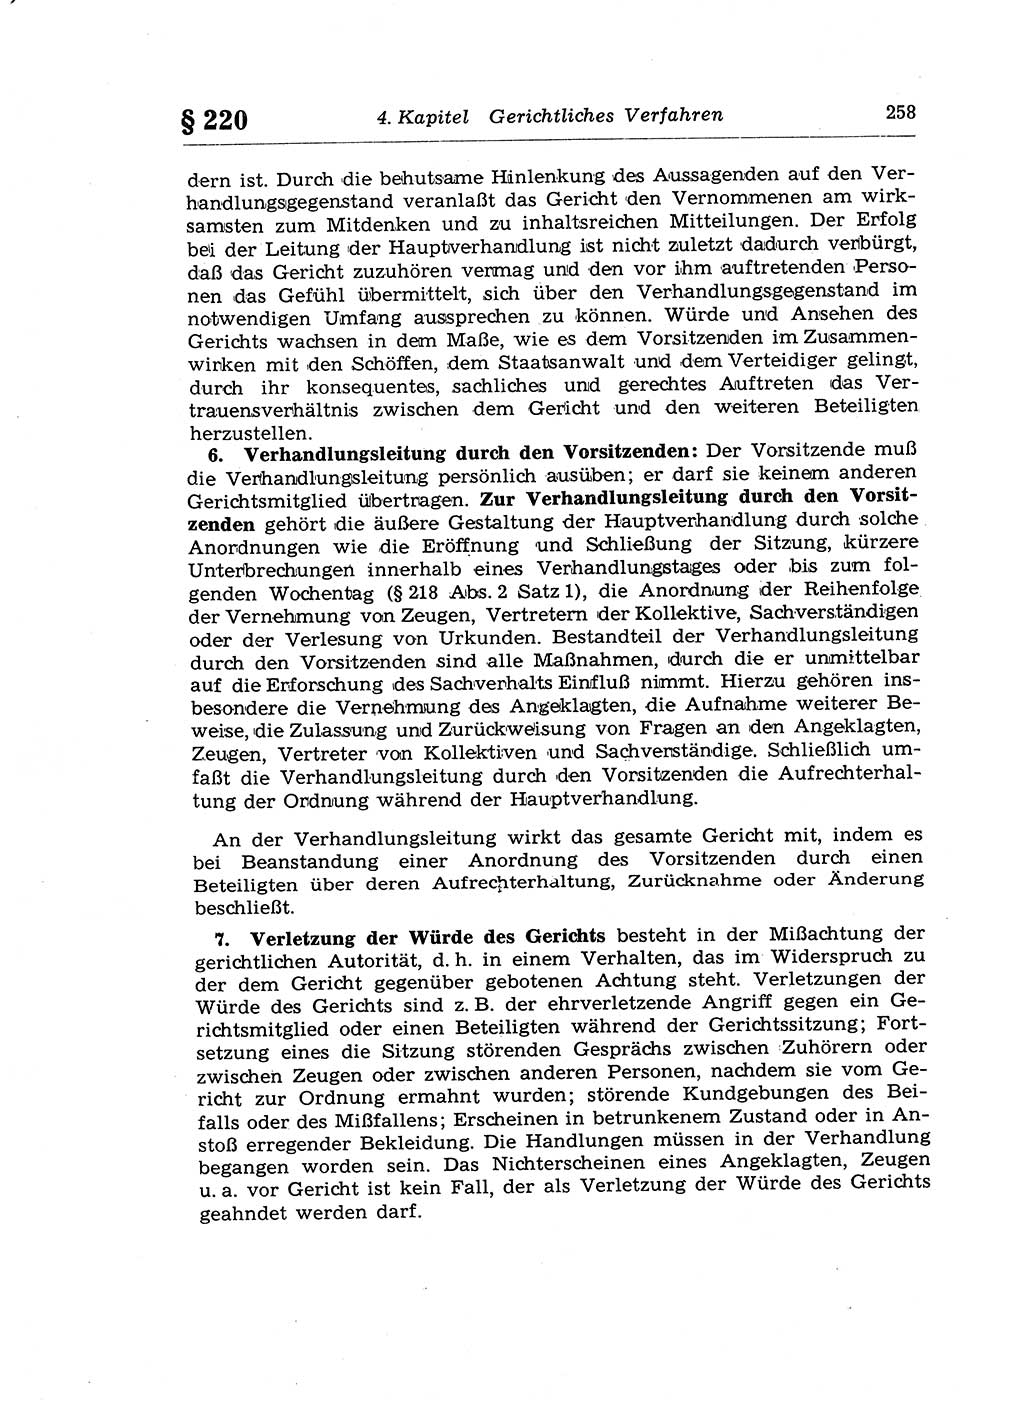 Strafprozeßrecht der DDR (Deutsche Demokratische Republik), Lehrkommentar zur Strafprozeßordnung (StPO) 1968, Seite 258 (Strafprozeßr. DDR Lehrkomm. StPO 19688, S. 258)